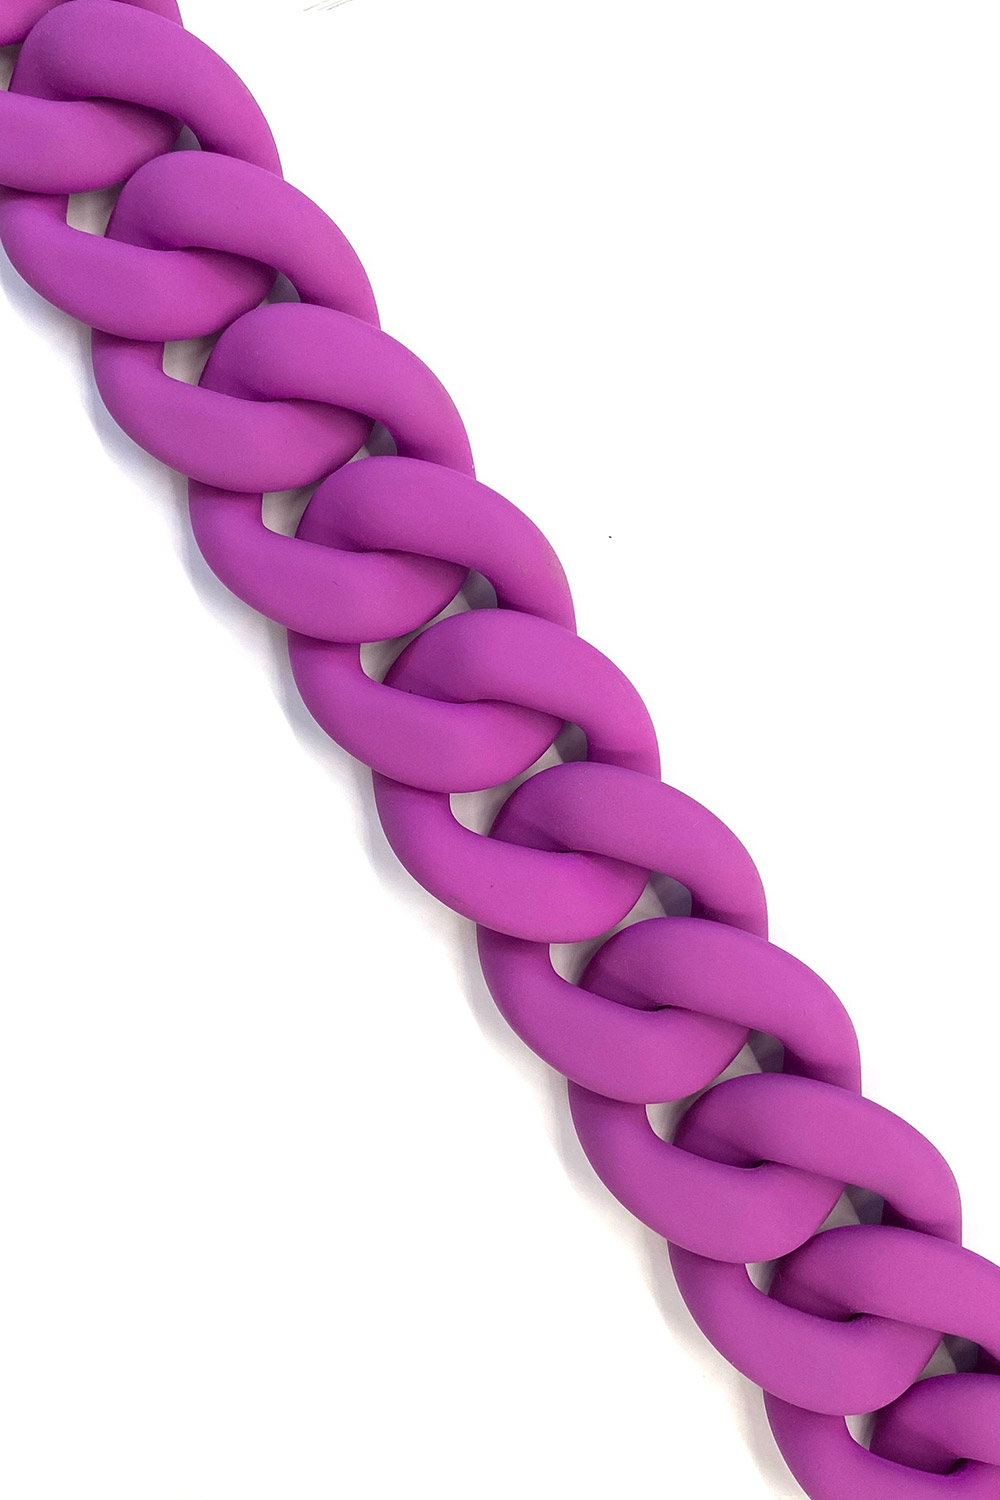 Silicon Chain - thick 60cm - Purple